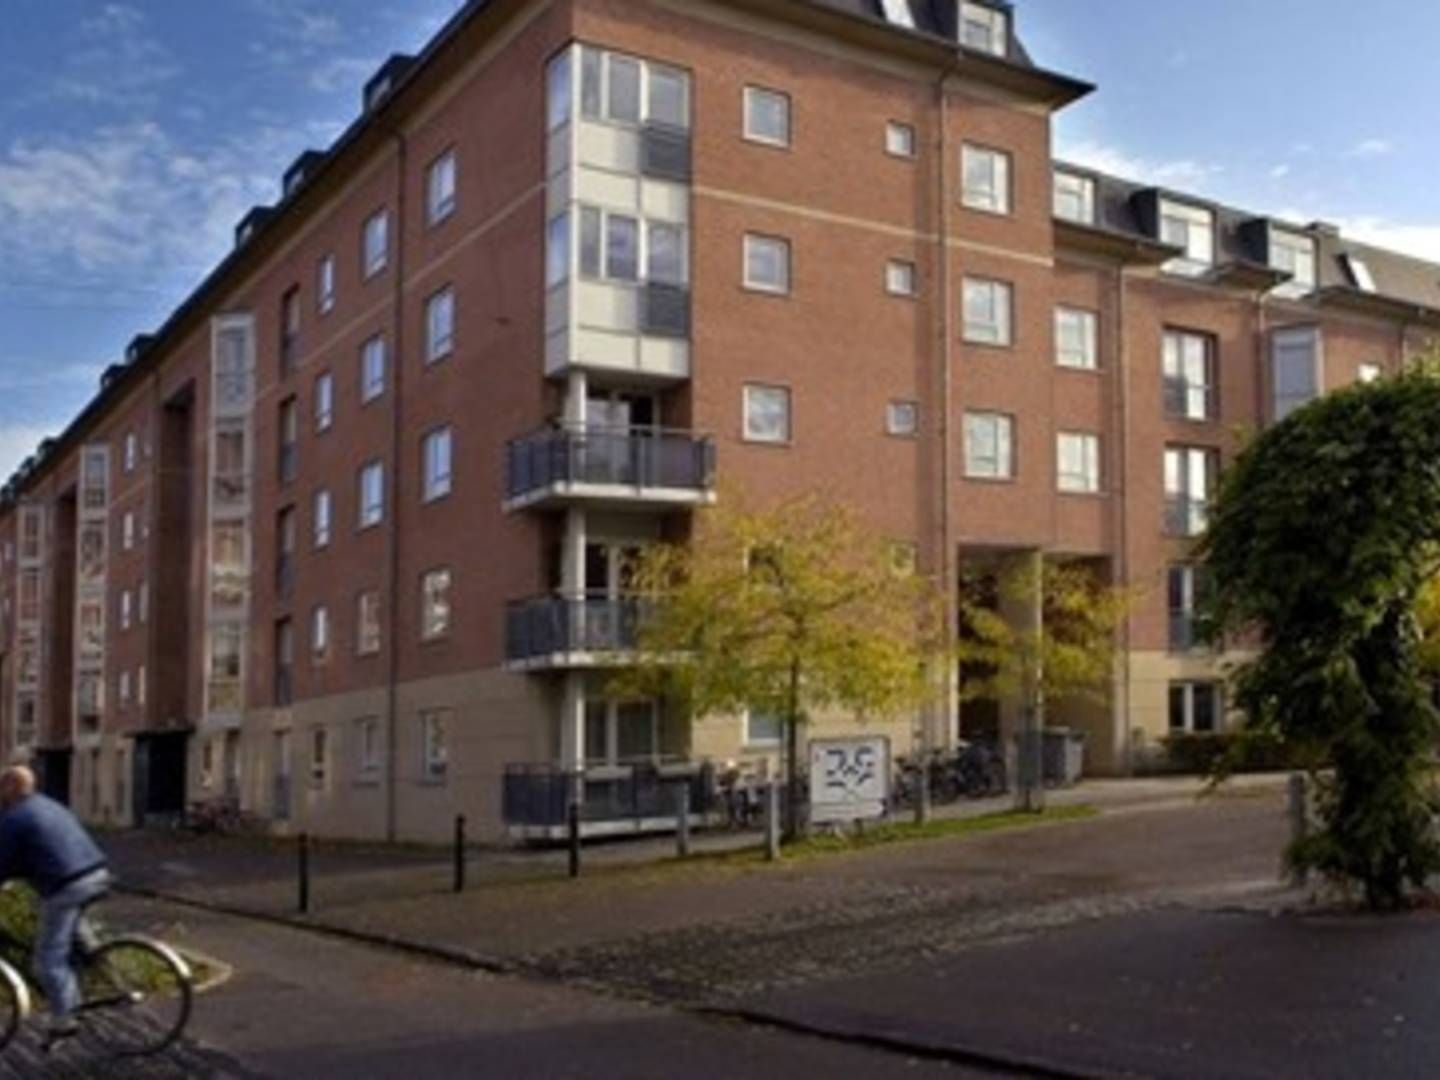 Svenske ejendomsselskaber begyndte for alvor at købe ind i Danmark i 2012, herunder en stor ejendom på Østerbro, som Balder AB købte for 1,1 mia. kr. | Foto: Foto: Mik Eskestad